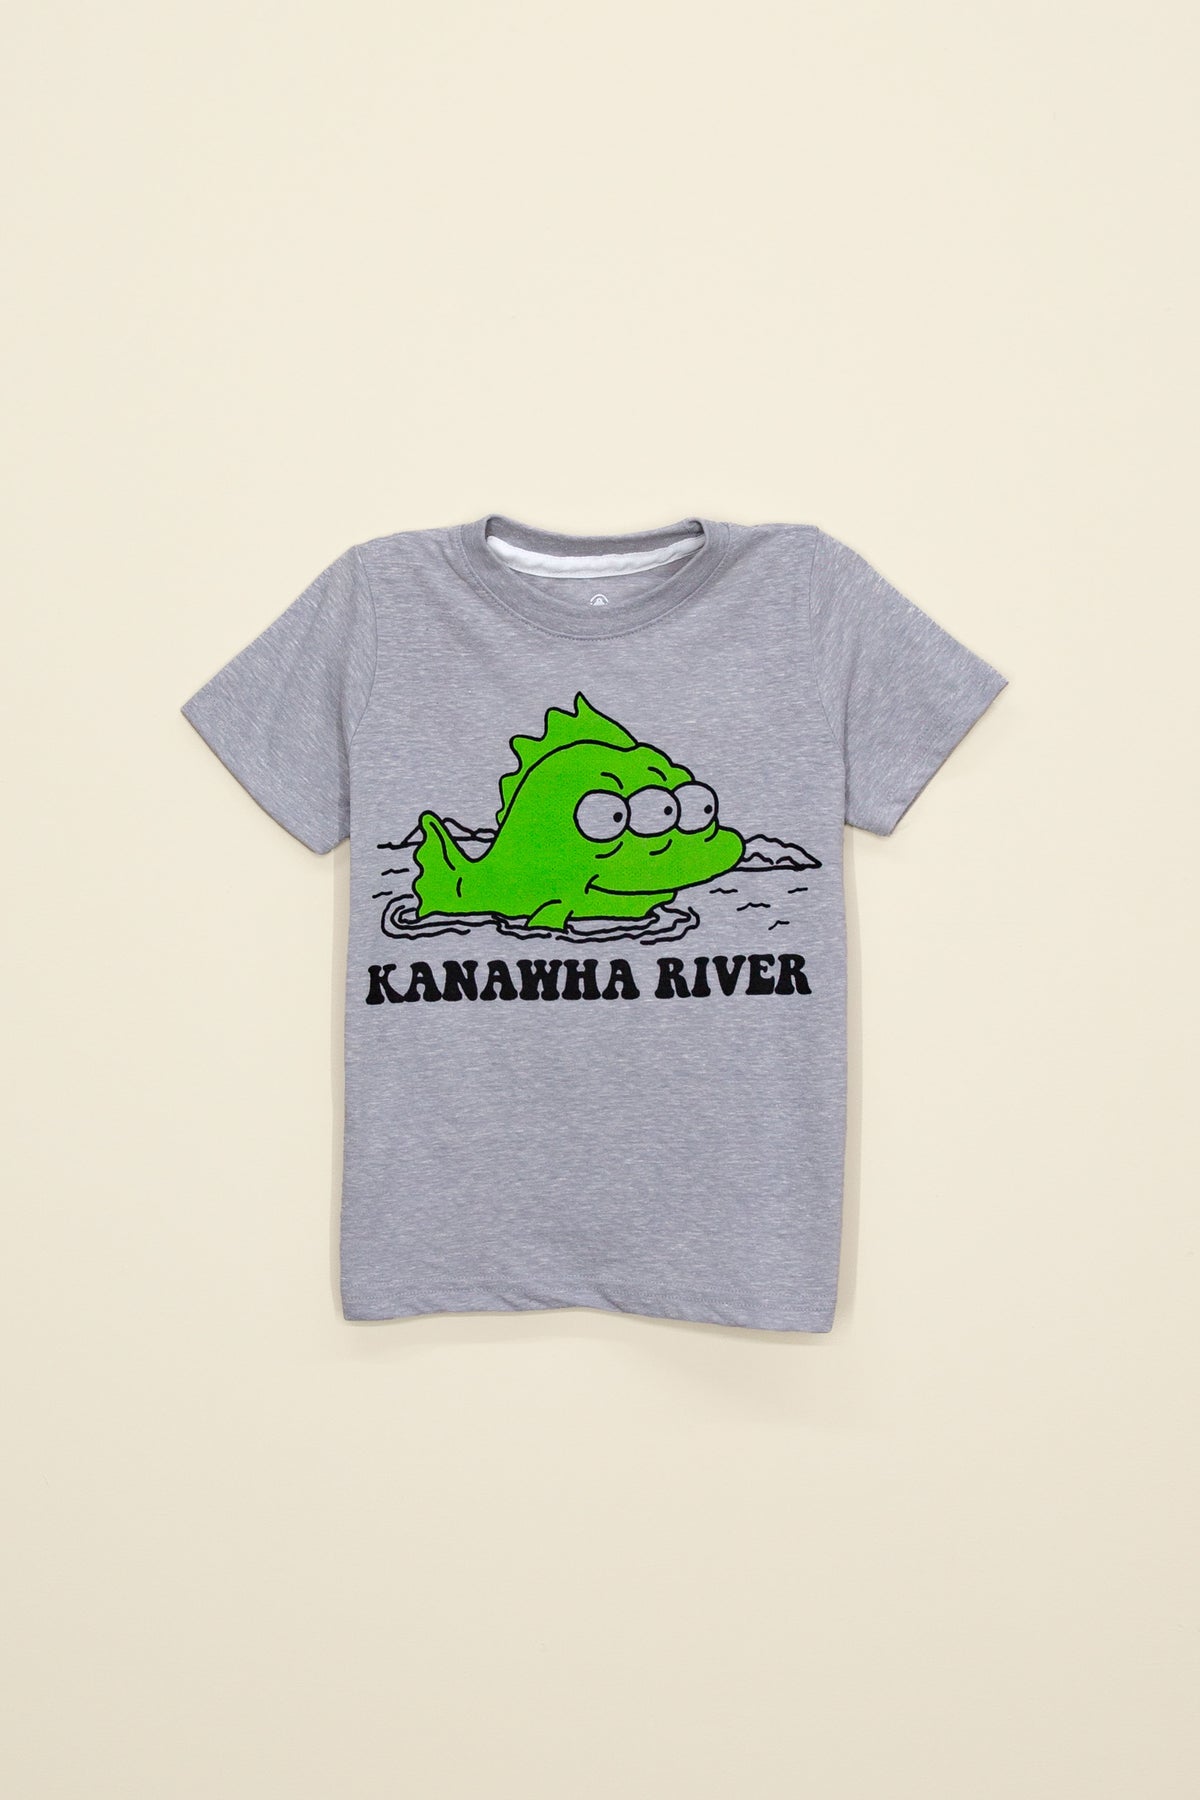 kanawha river kids tee